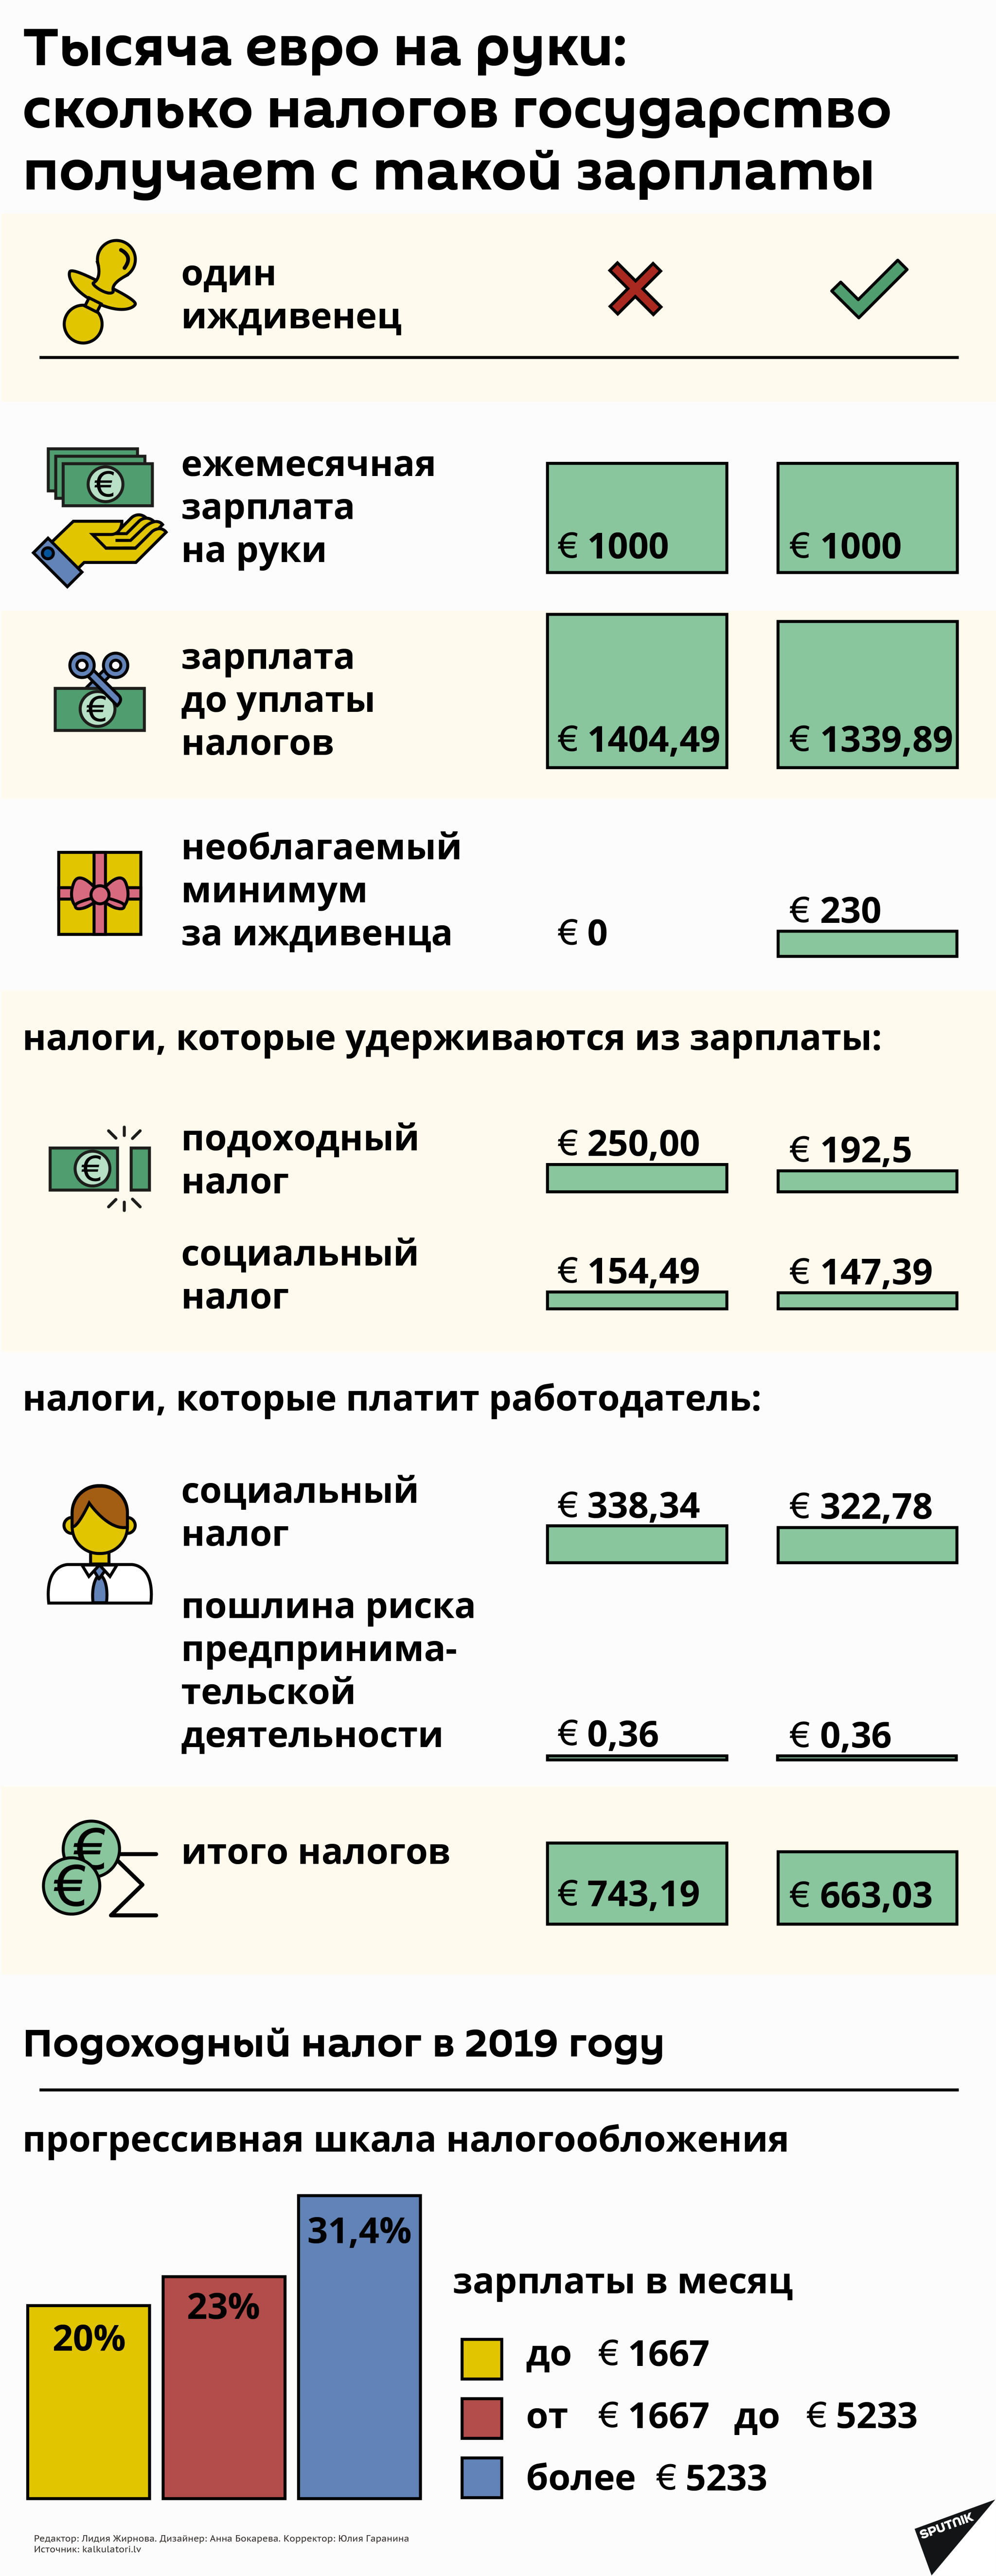 Тысяча евро на руки: сколько налогов государство получает с такой зарплаты - Sputnik Латвия